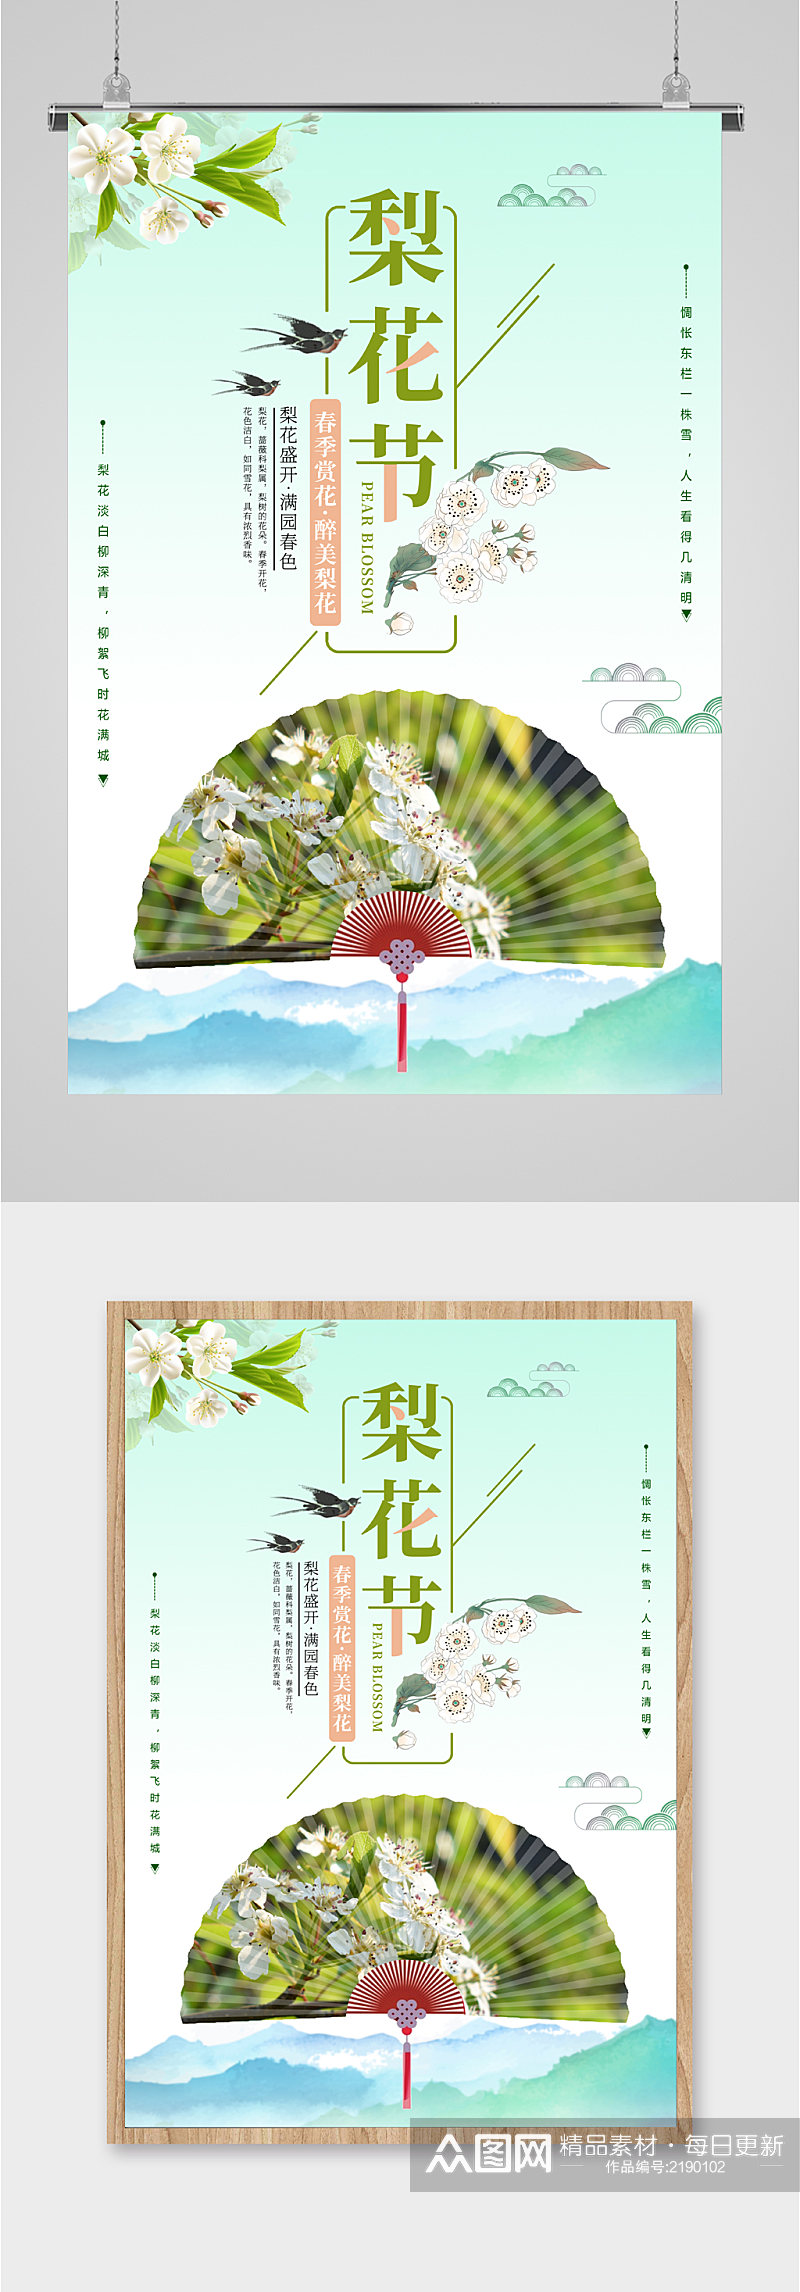 梨花节节日旅游海报素材